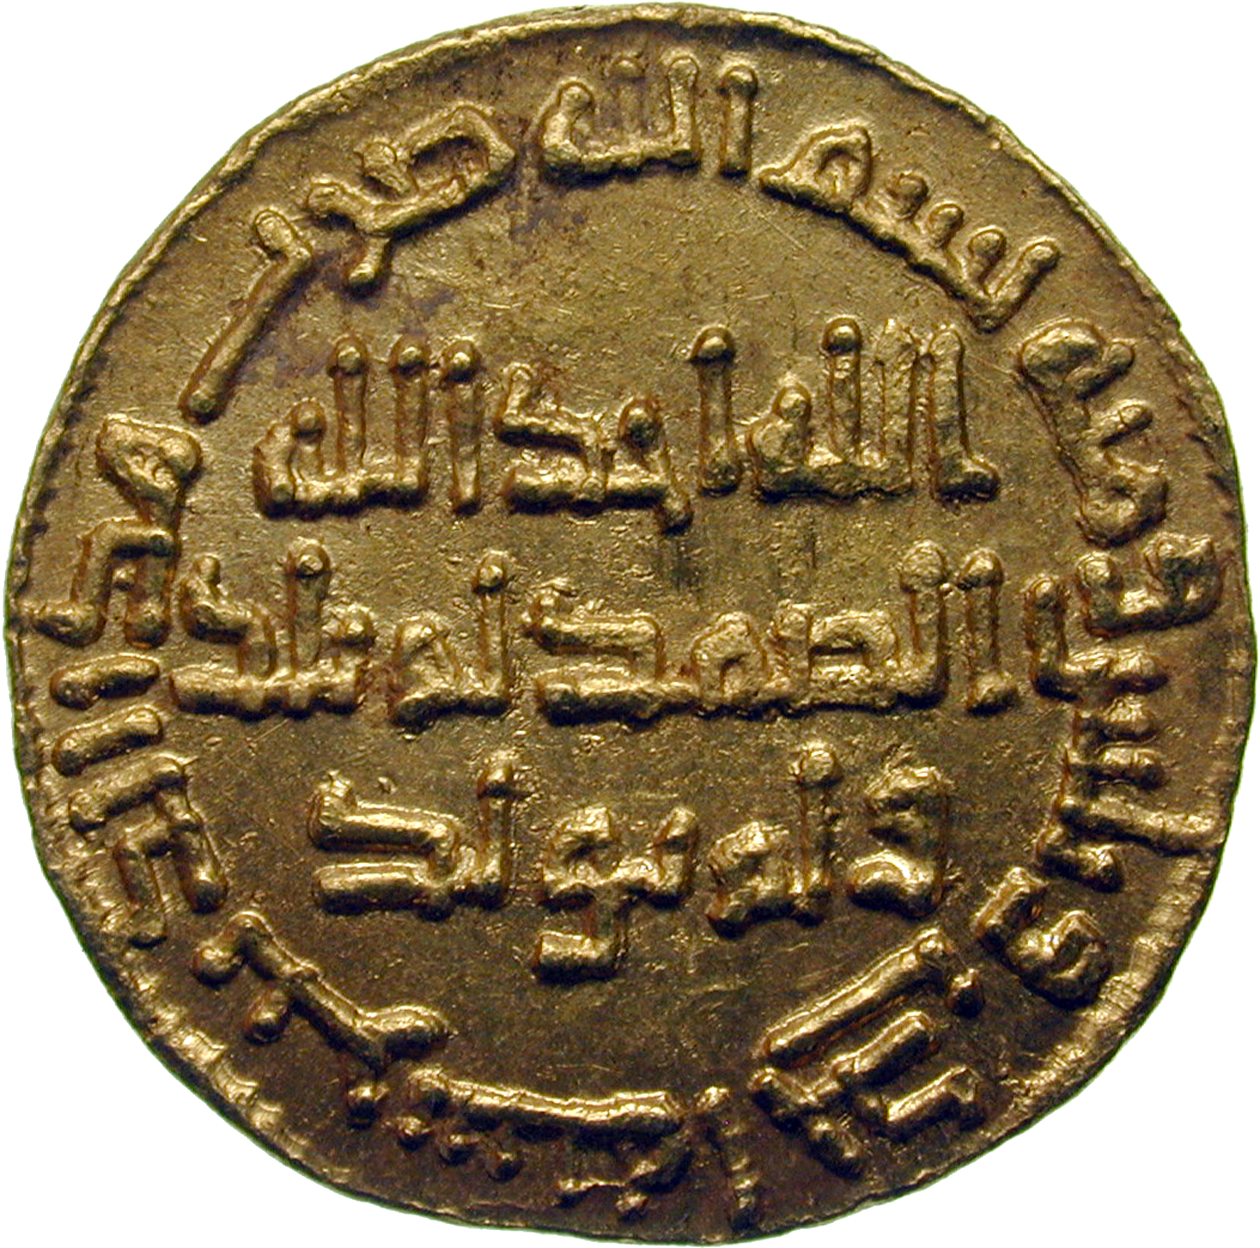 Umayyad Empire, Marwan II, Dinar, 131 AH (reverse)